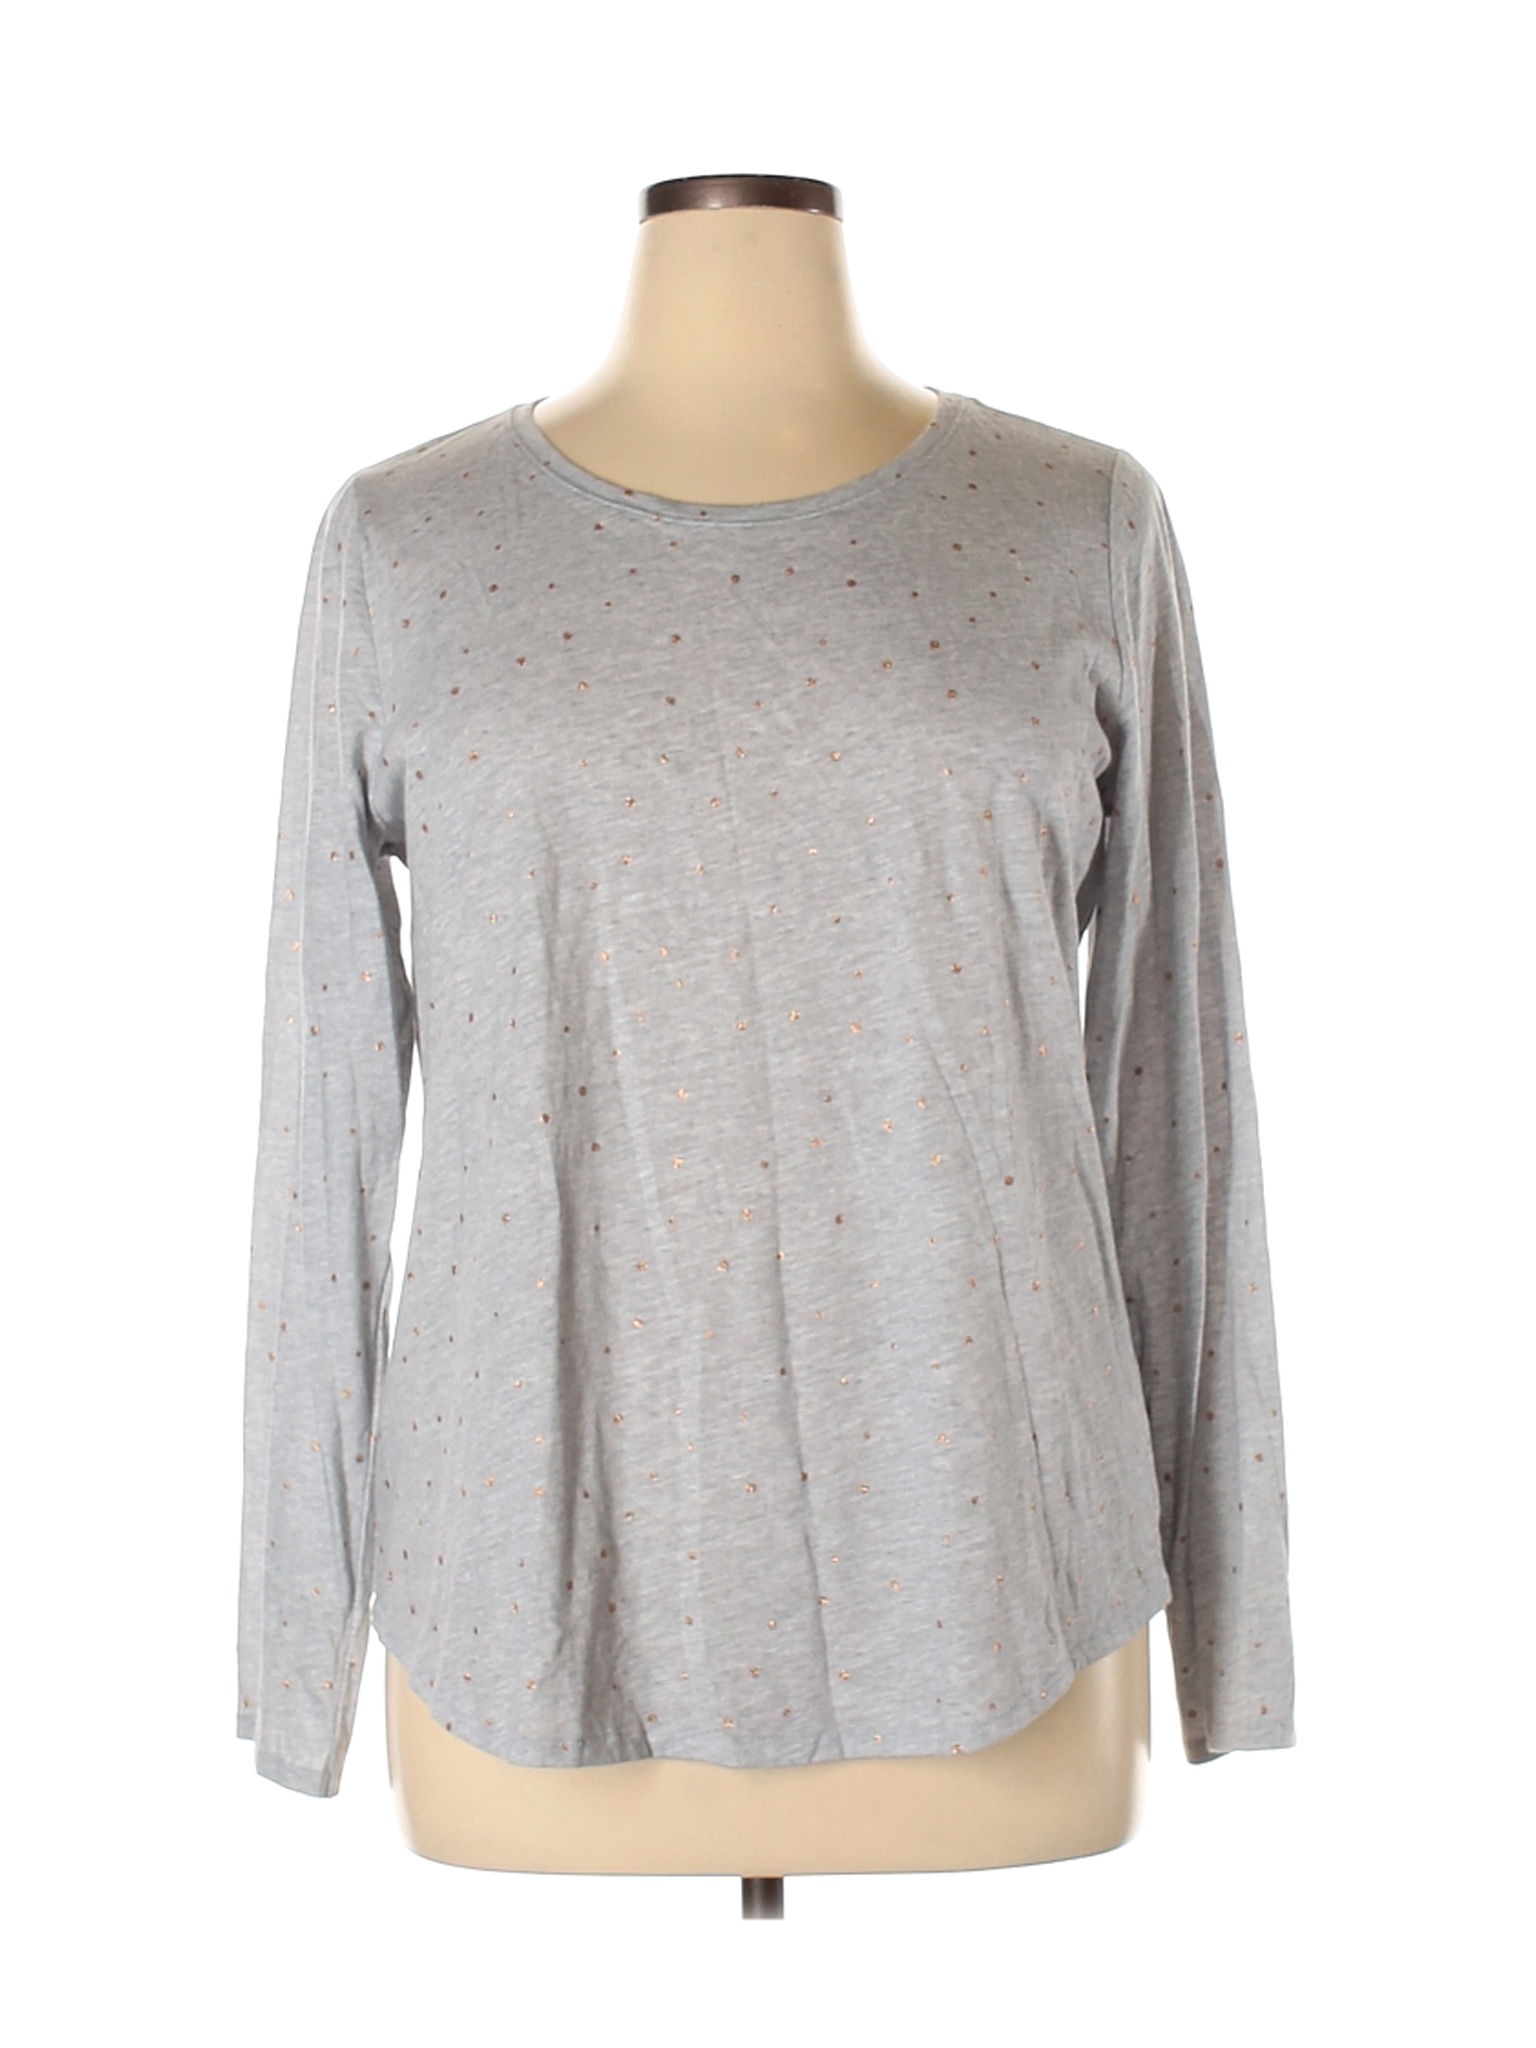 Sonoma Goods for Life Women Gray Long Sleeve T-Shirt XL | eBay